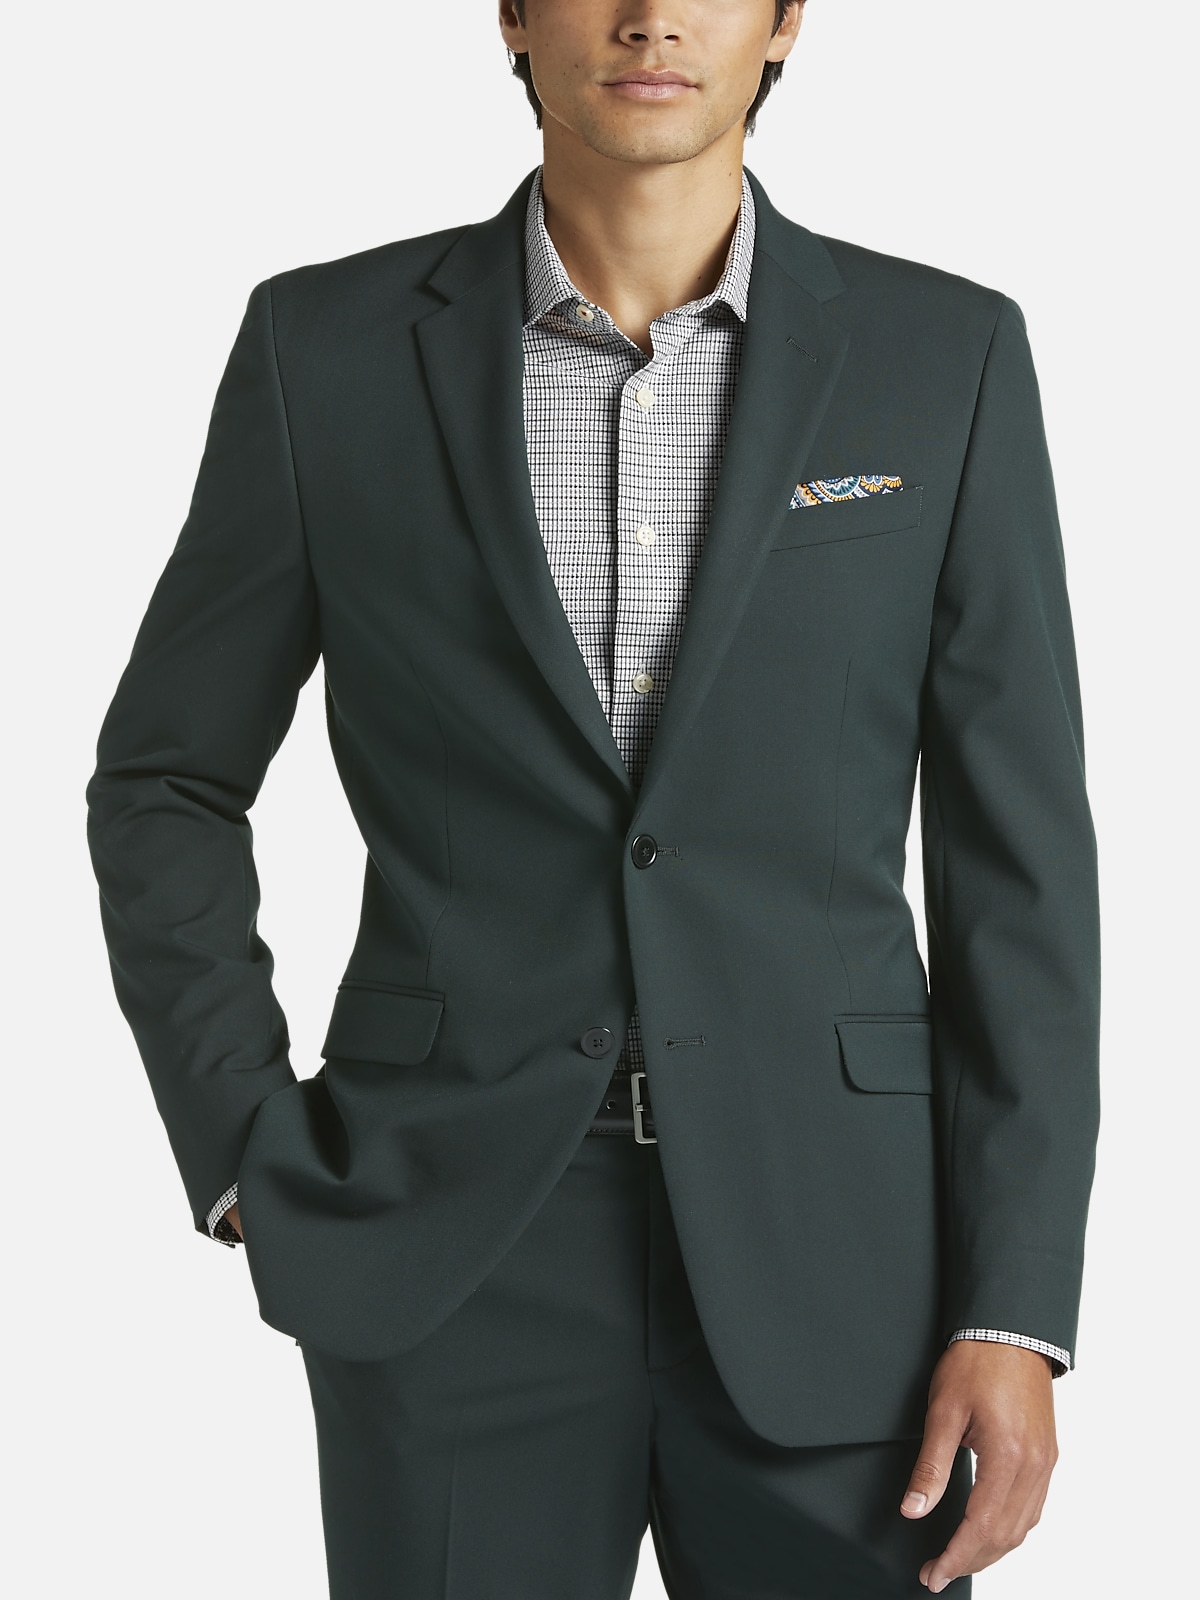 Suits for Men - Buy Men Suit & Blazer Online